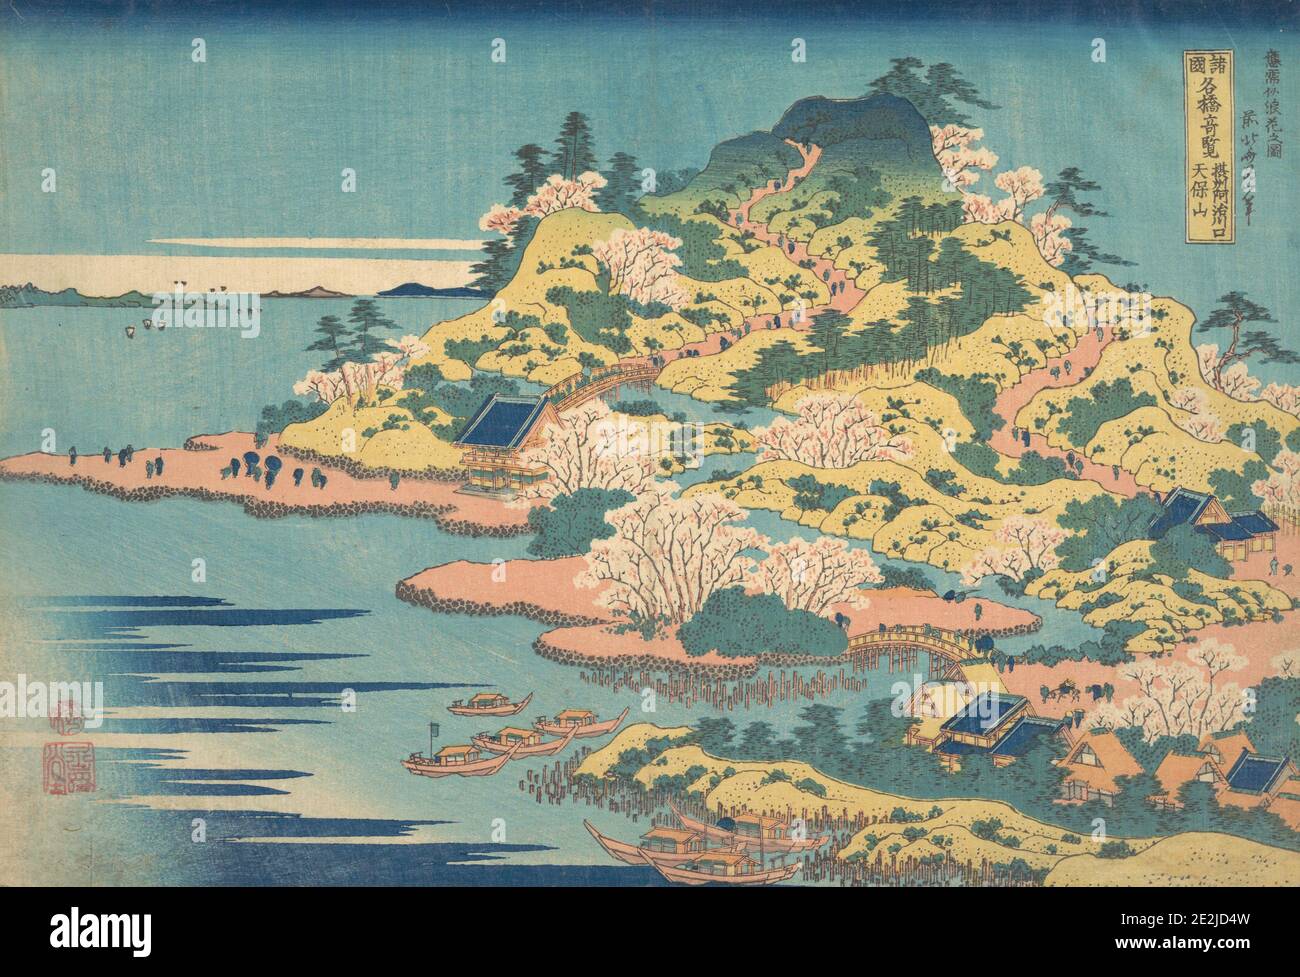 Tenpozan alla foce del fiume Aji nella provincia di Settsu (Sesshu Ajikawaguchi Tenpozan), dalla serie notevoli vedute dei ponti in varie province (Shokoku meikyo kiran), 1827-30. Foto Stock